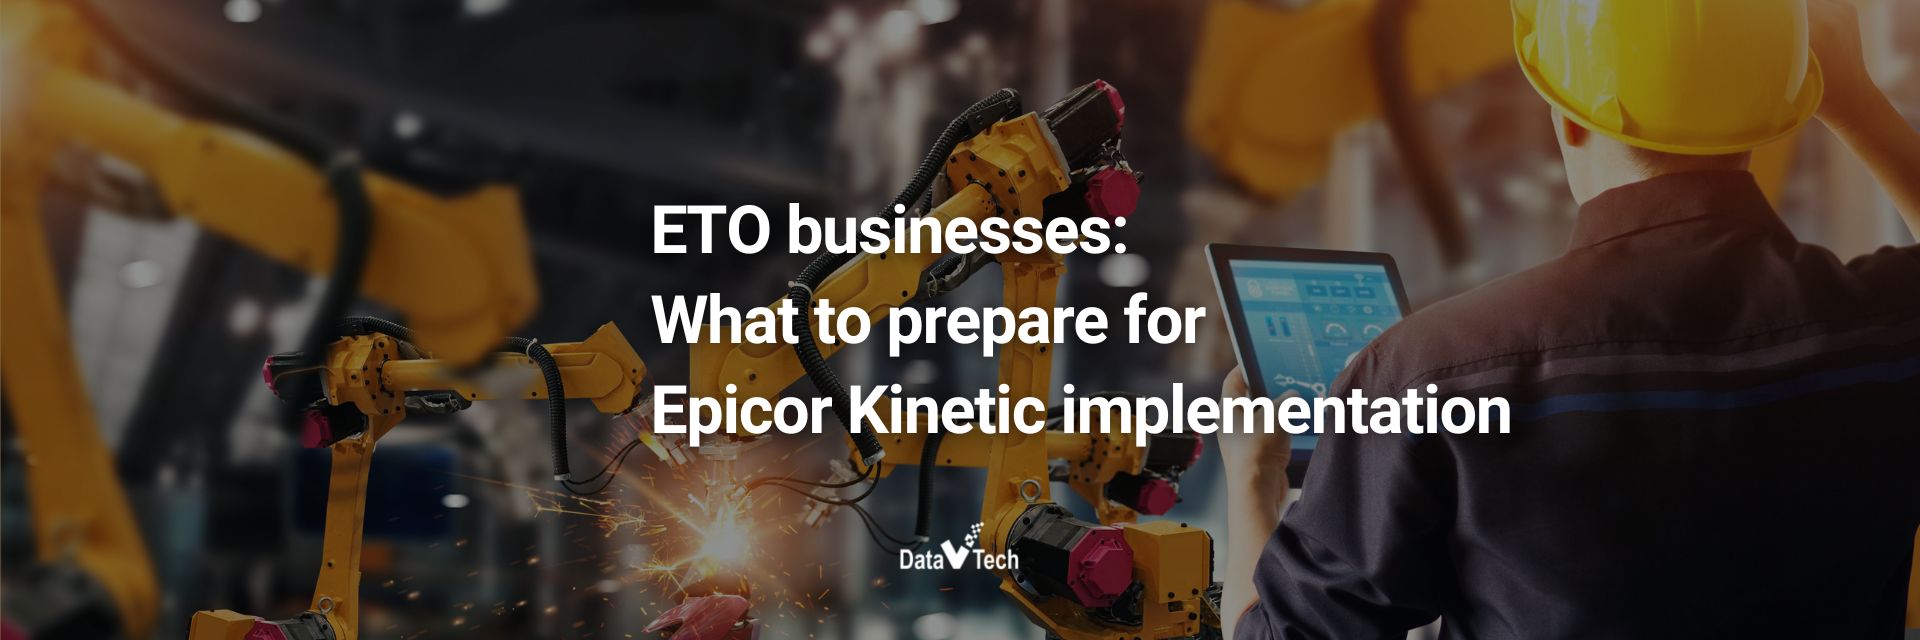 ETO business-What to prepare for Epicor Kinetic implementation-Data V Tech-ERP Vietnam